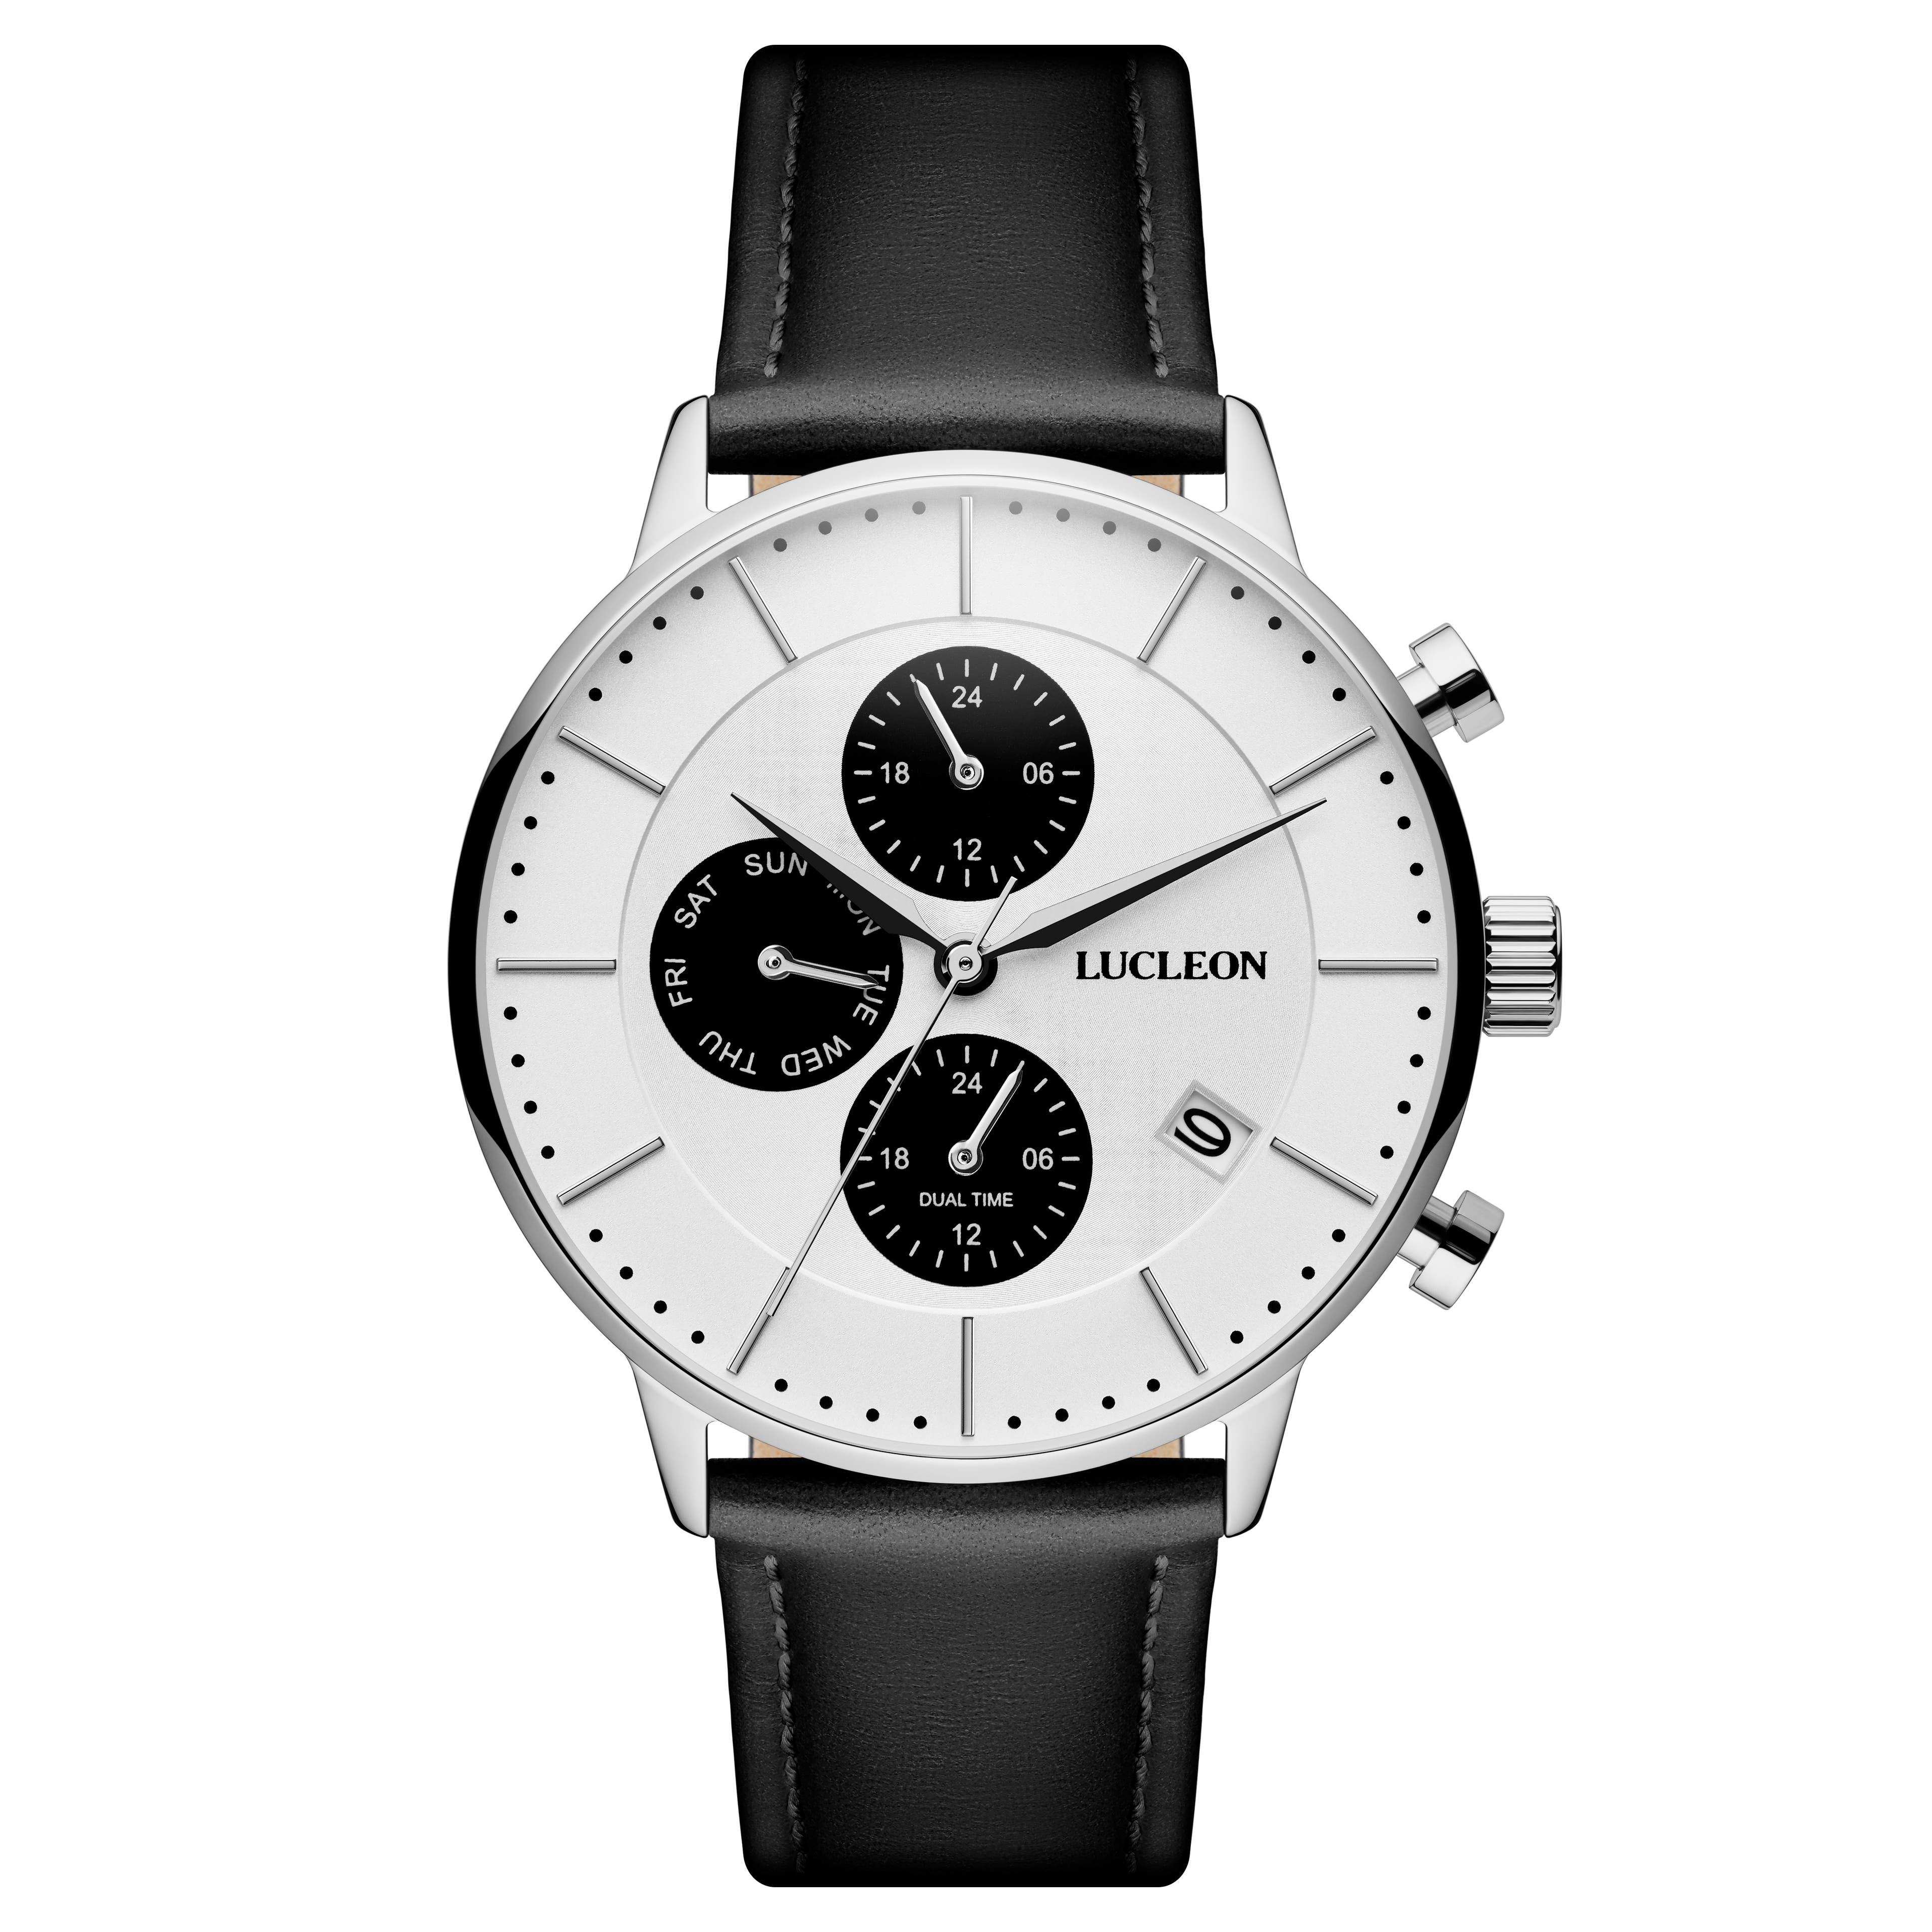 Ternion | Reloj con doble huso horario de acero inoxidable blanco y negro